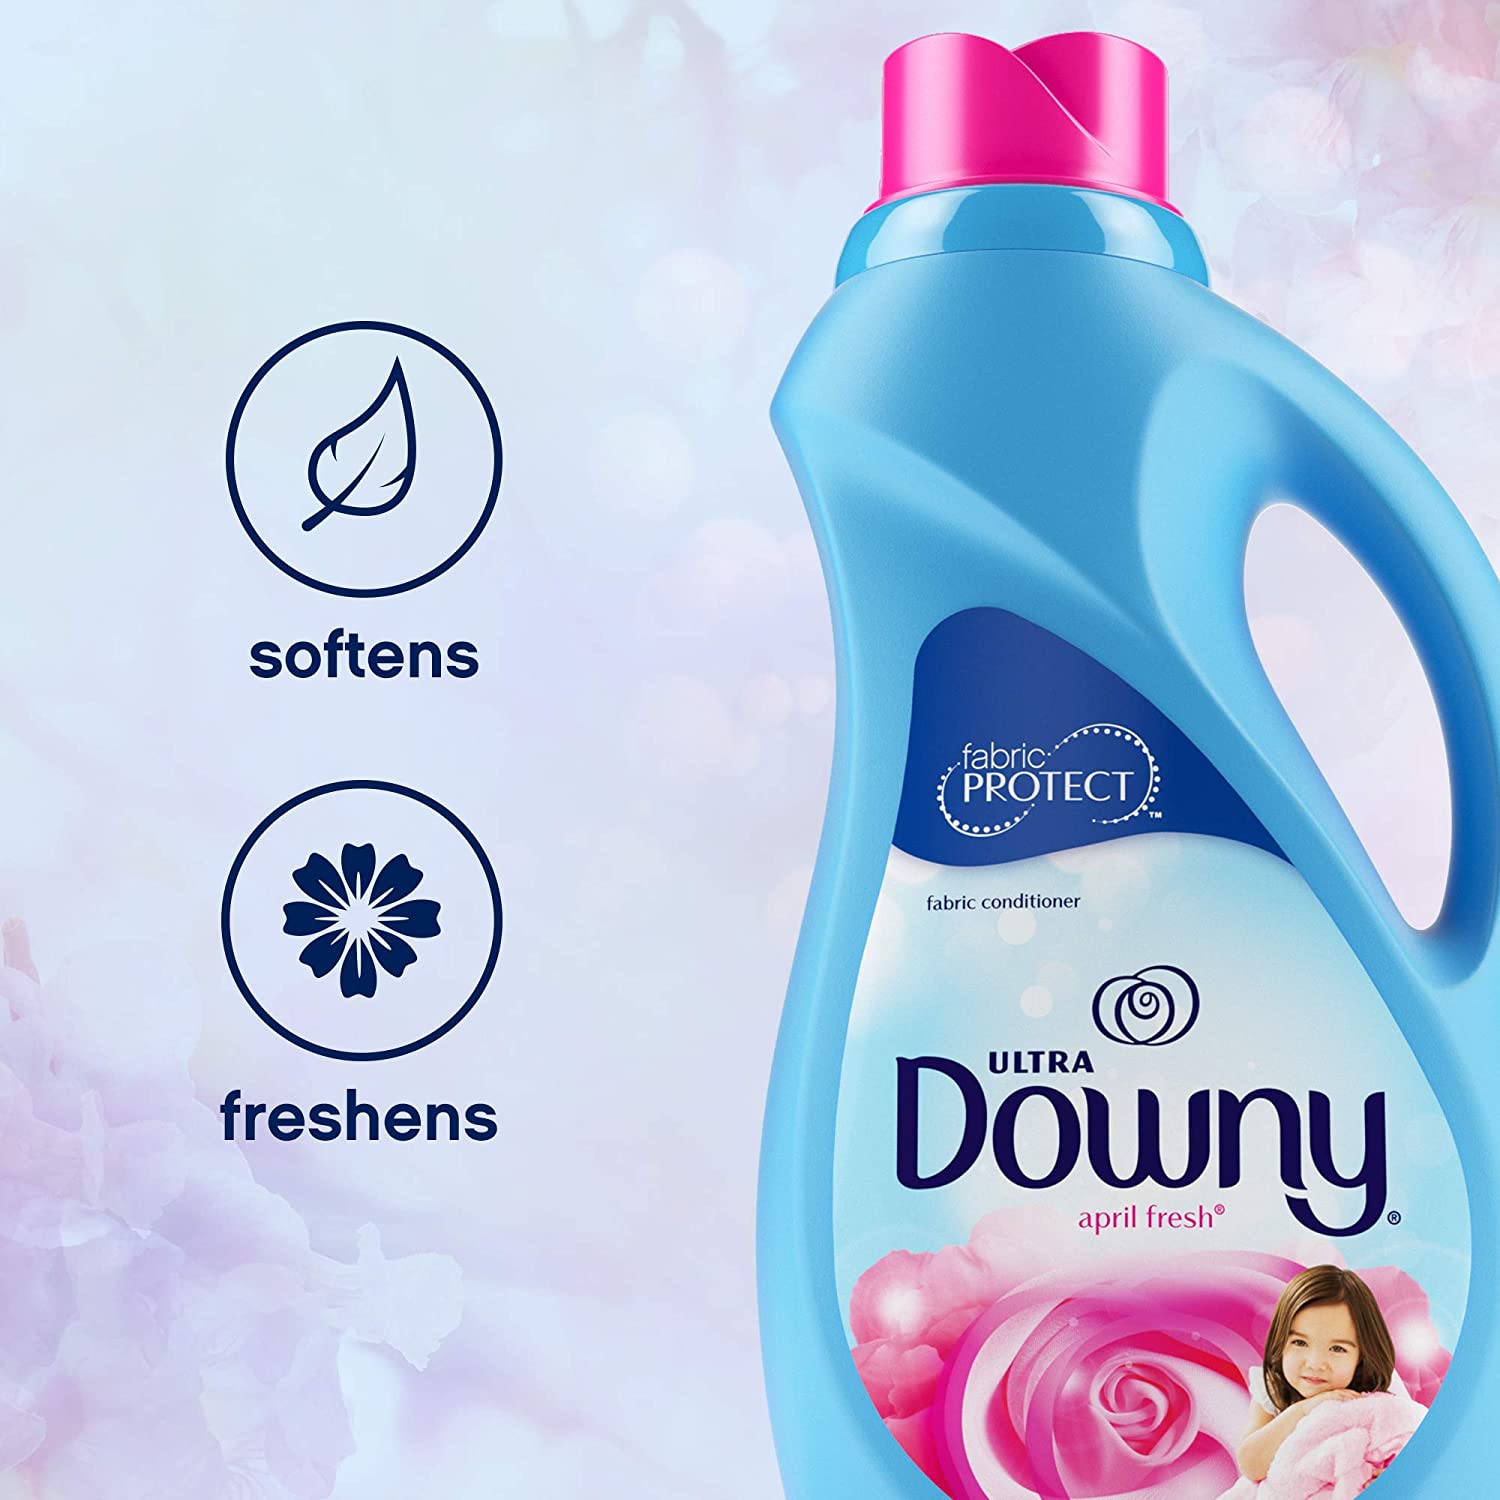 Downy Ultra April Fresh Liquid Fabric Softener 40 Loads 34 Fl Oz, 6 Pack –